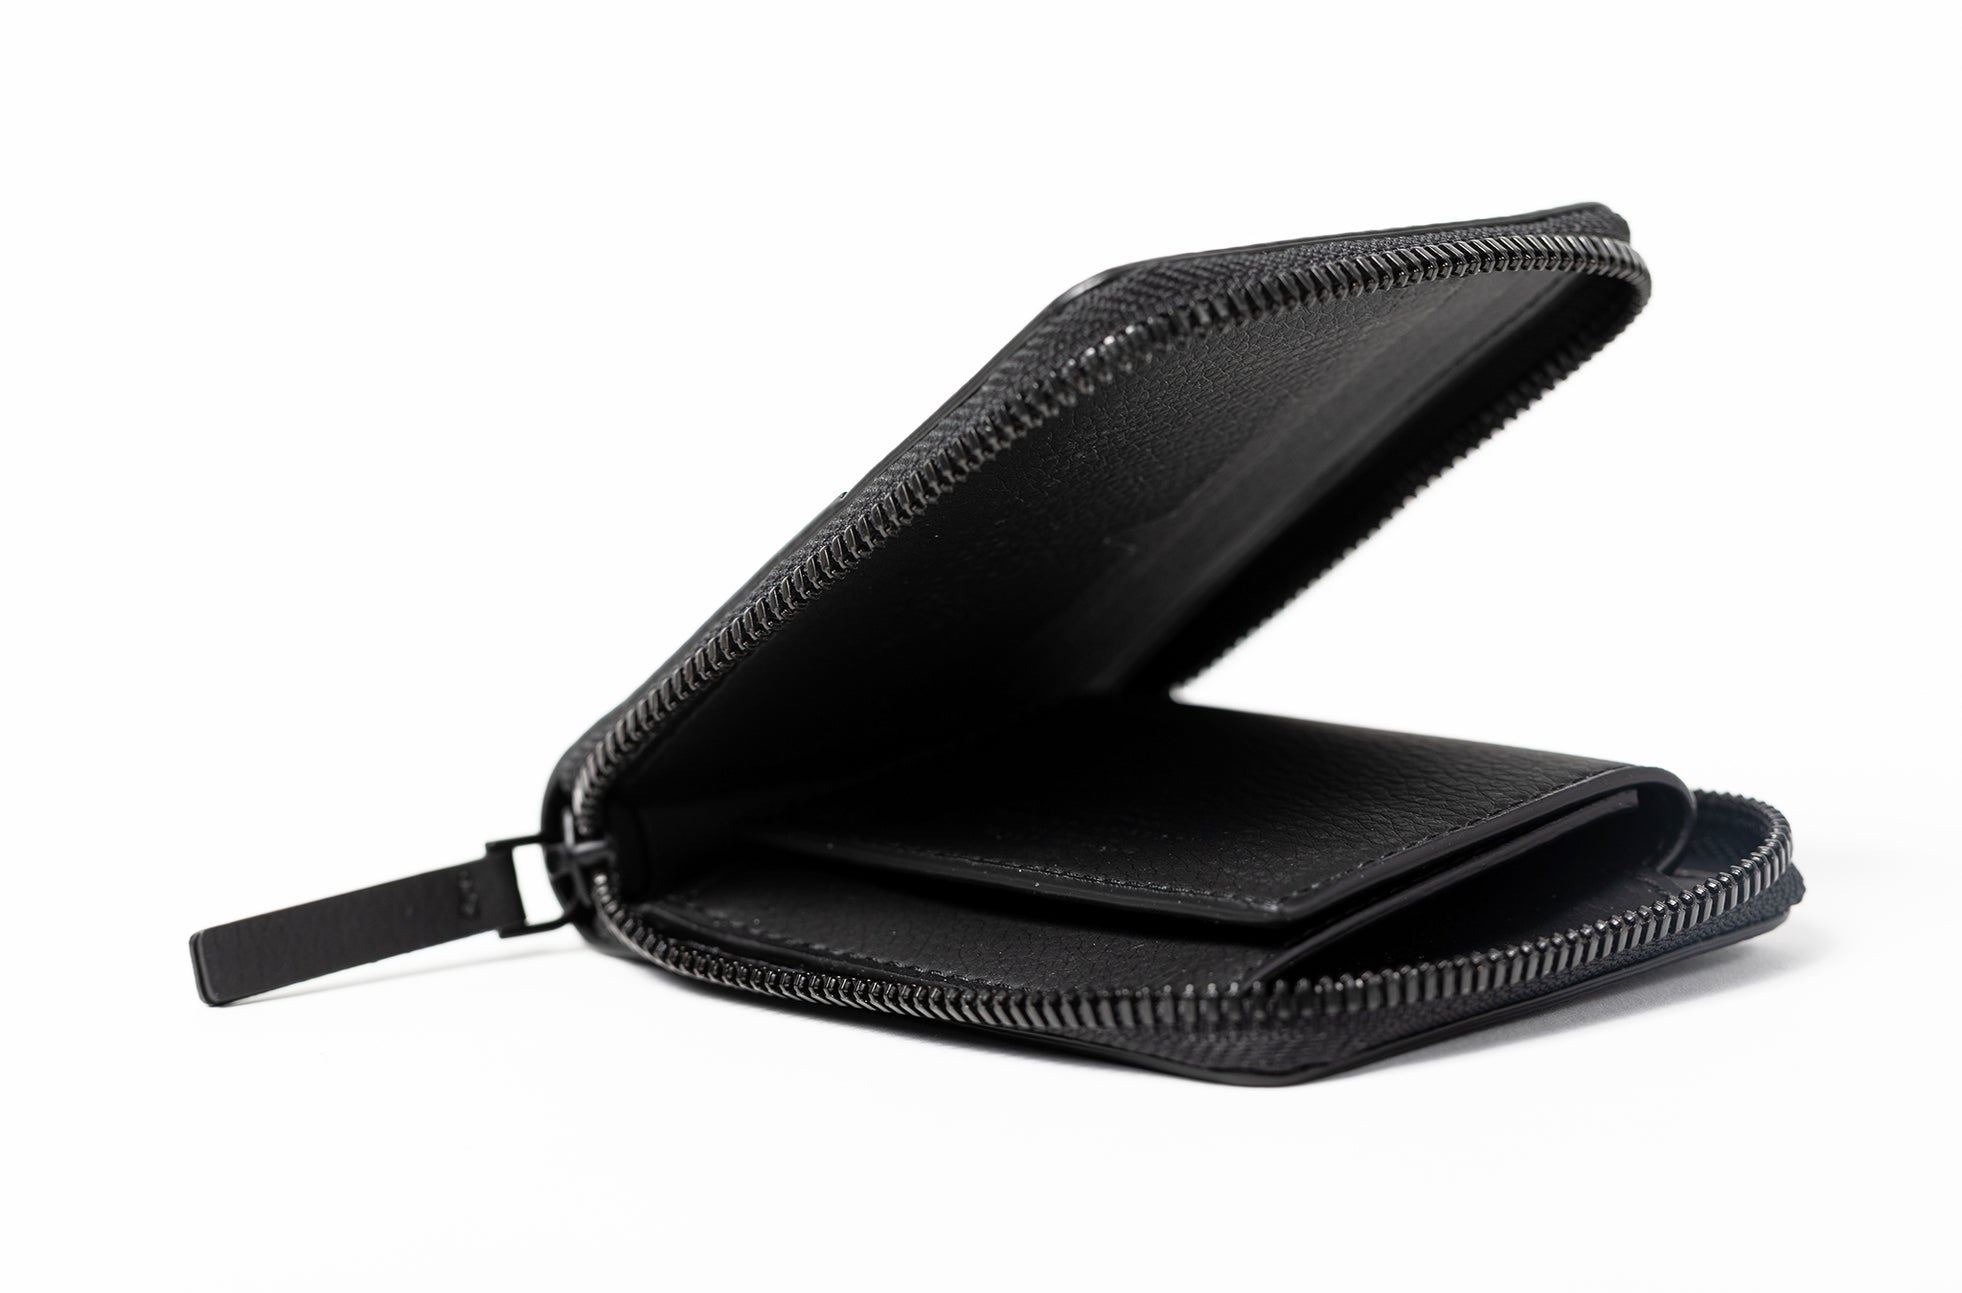 The Zip-Around Wallet in Technik in Black image 9